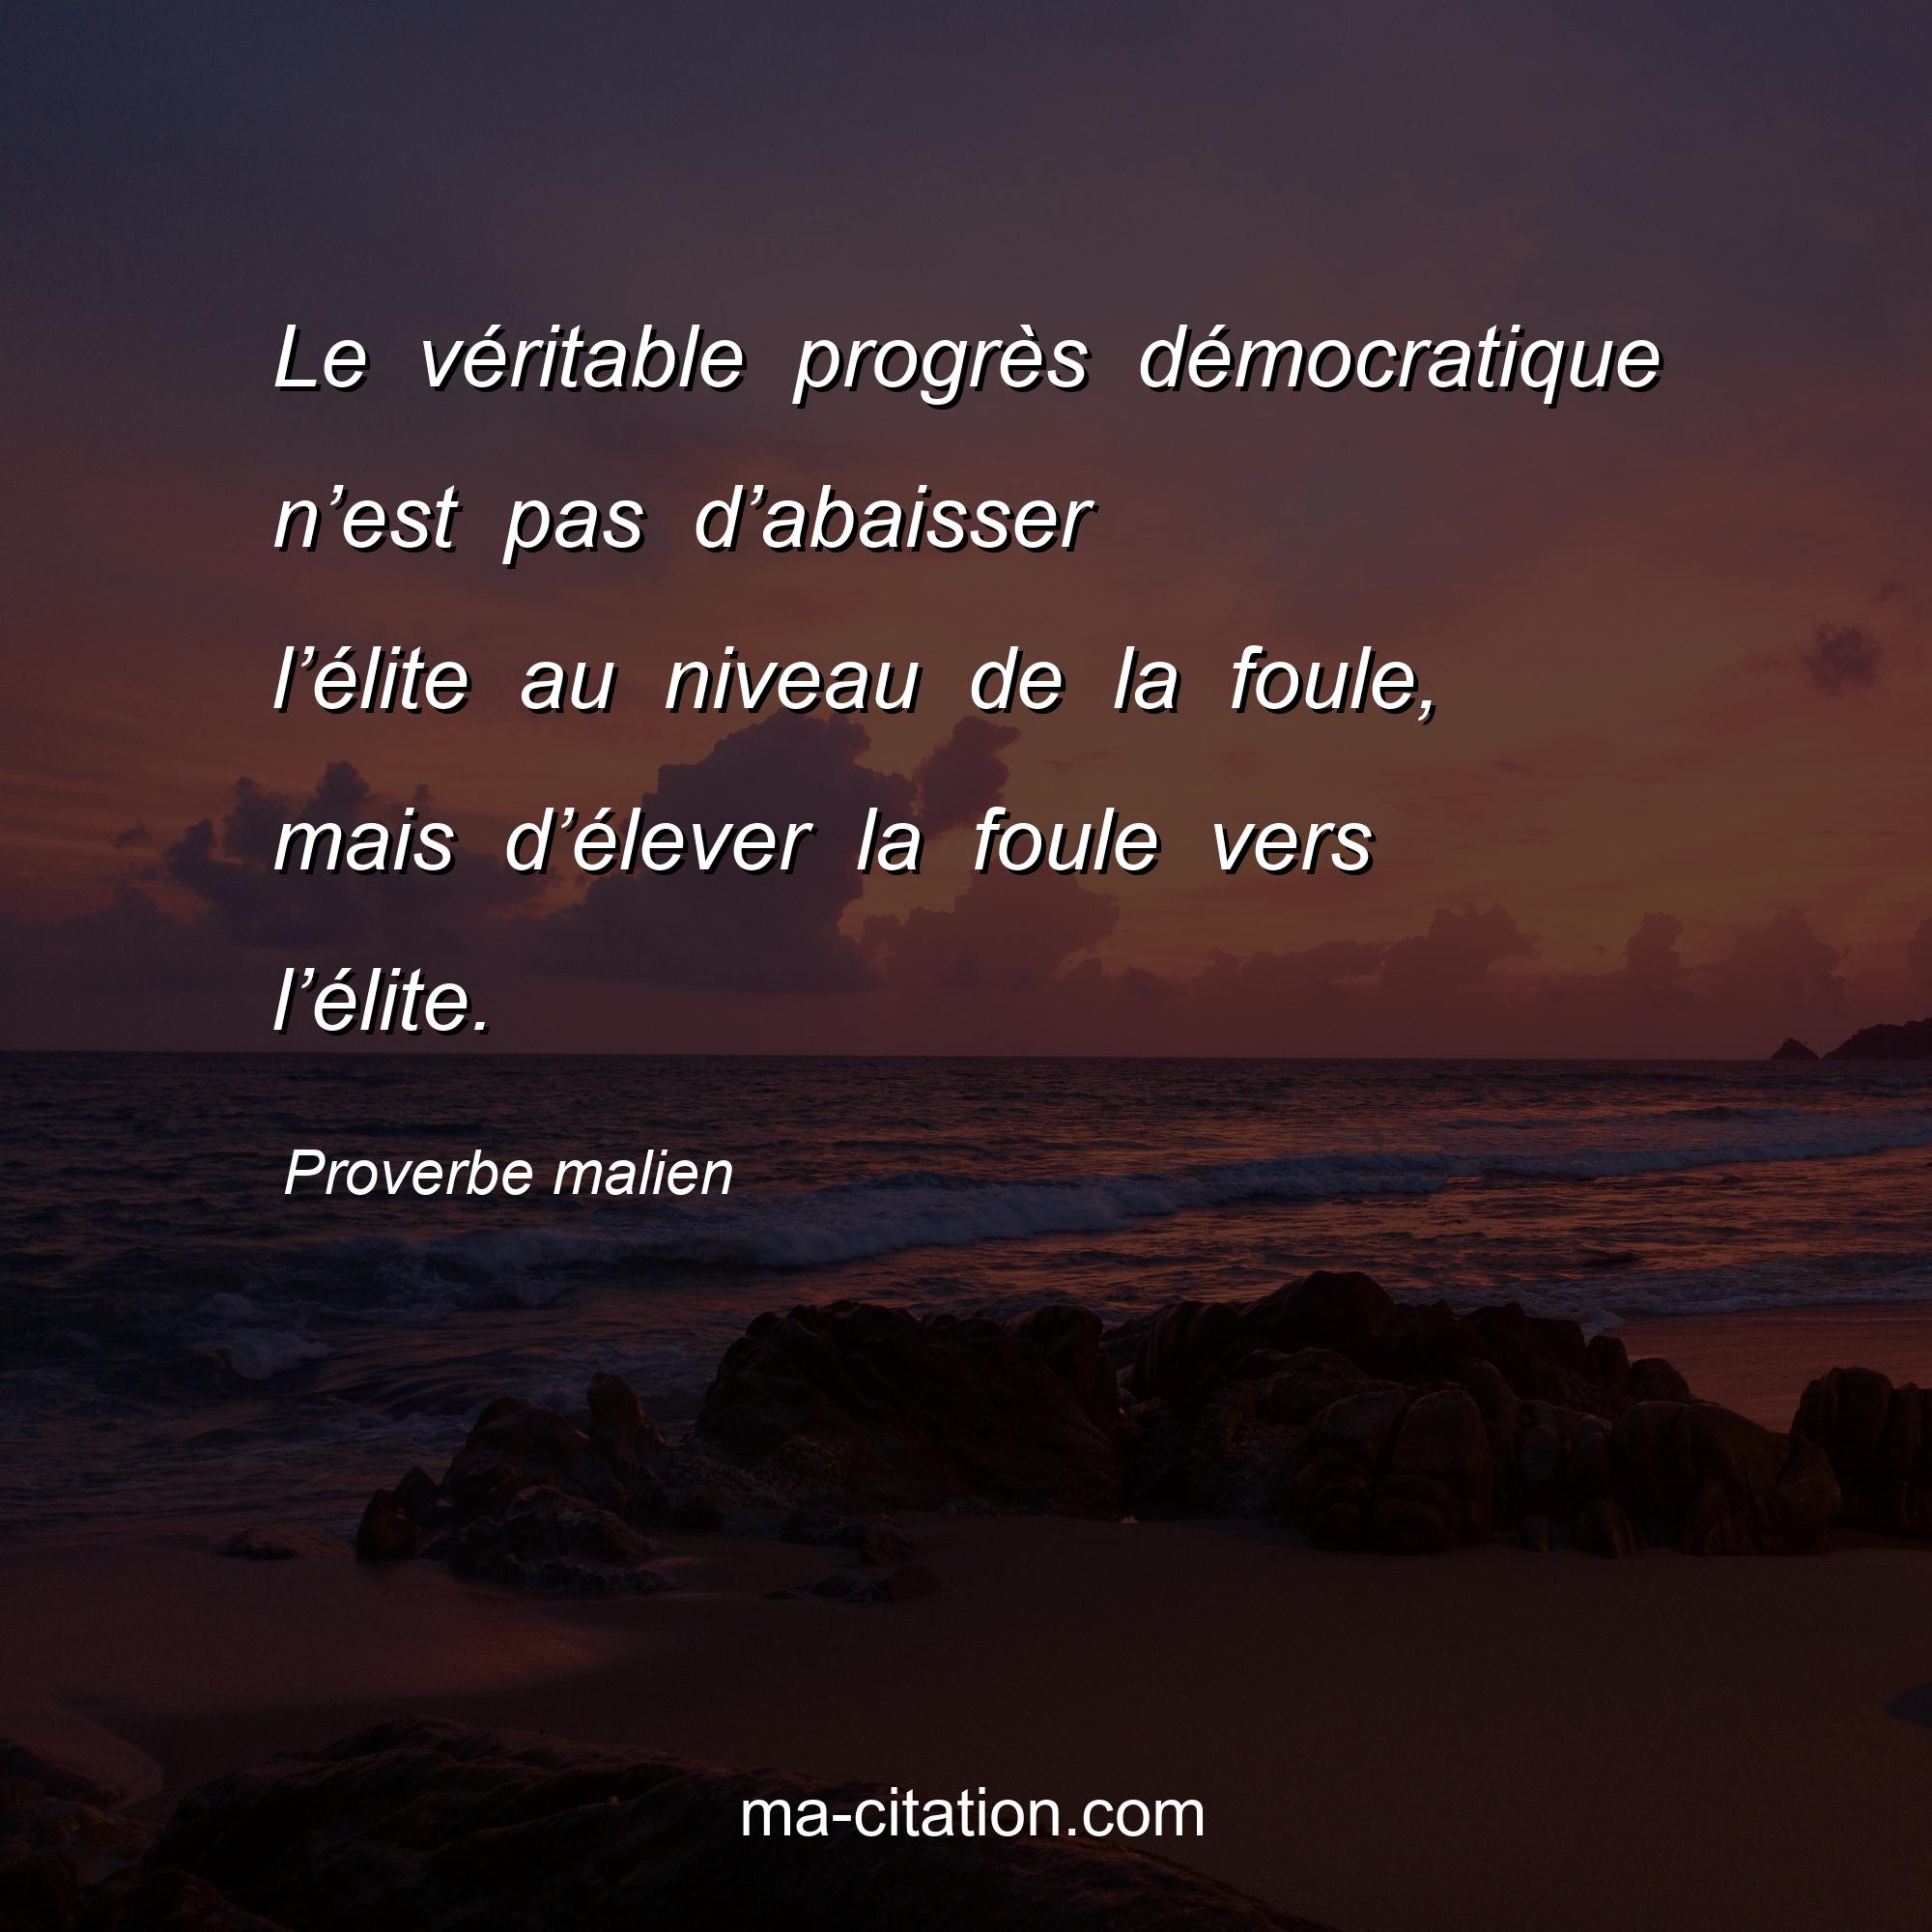 Proverbe malien : Le véritable progrès démocratique n’est pas d’abaisser l’élite au niveau de la foule, mais d’élever la foule vers l’élite.